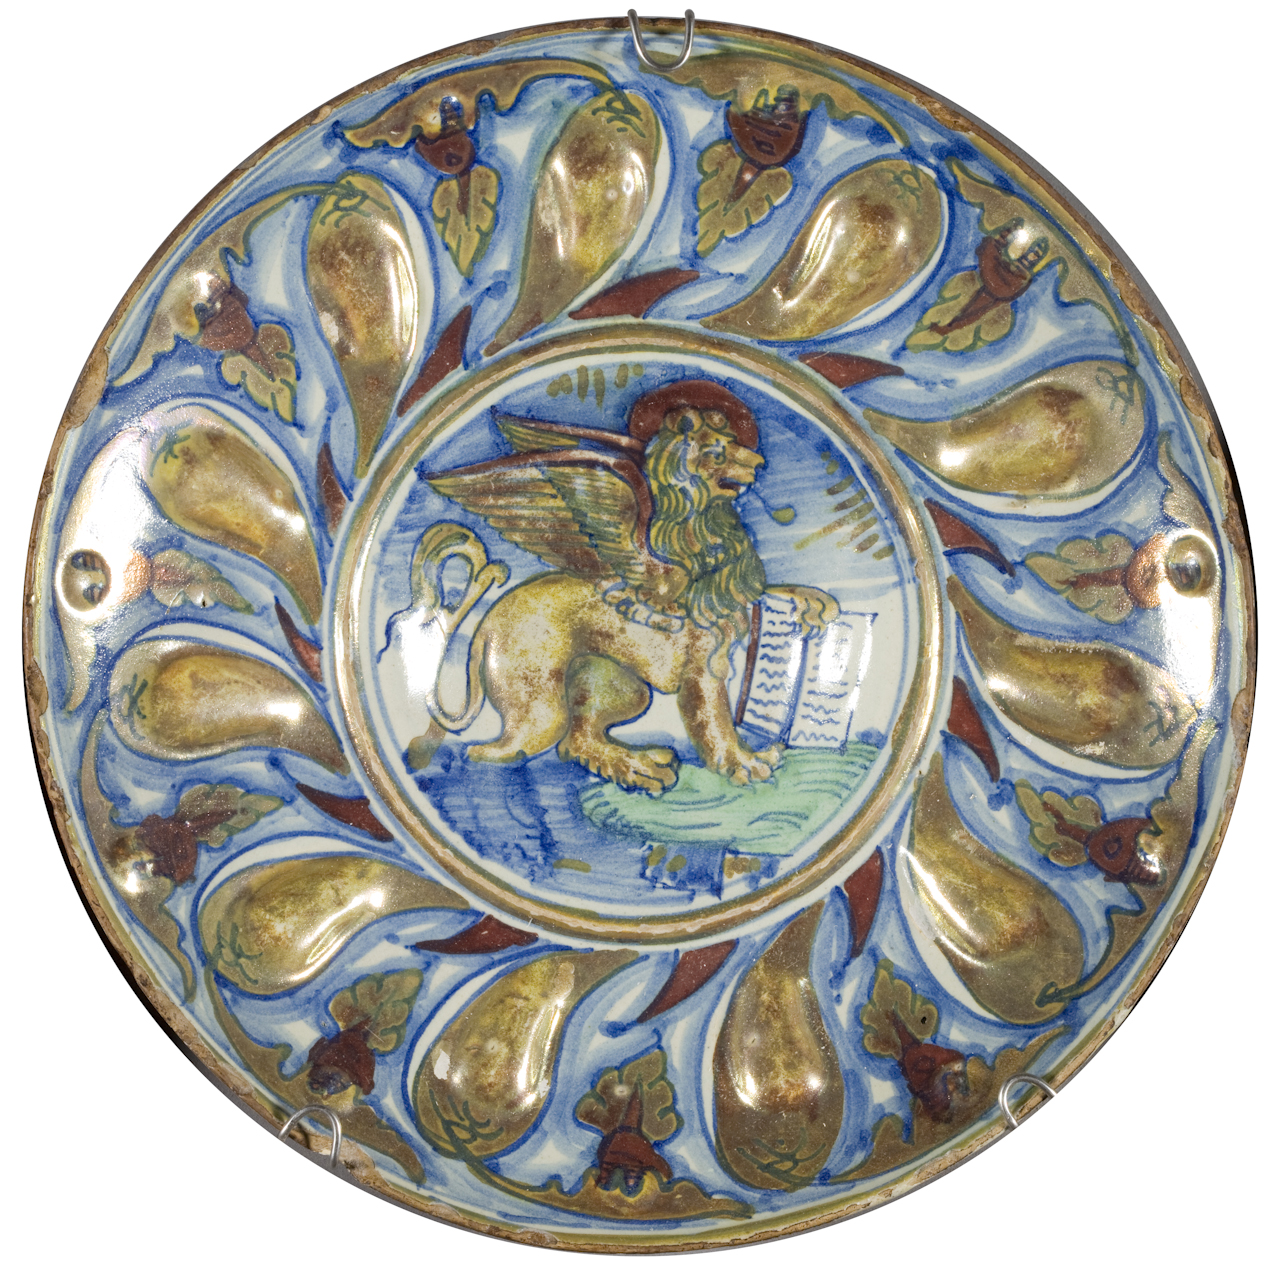 simbolo di San Marco: leone, motivo decorativo a baccellature in rilievo (coppa) - manifattura eugubina (secondo quarto sec. XVI)